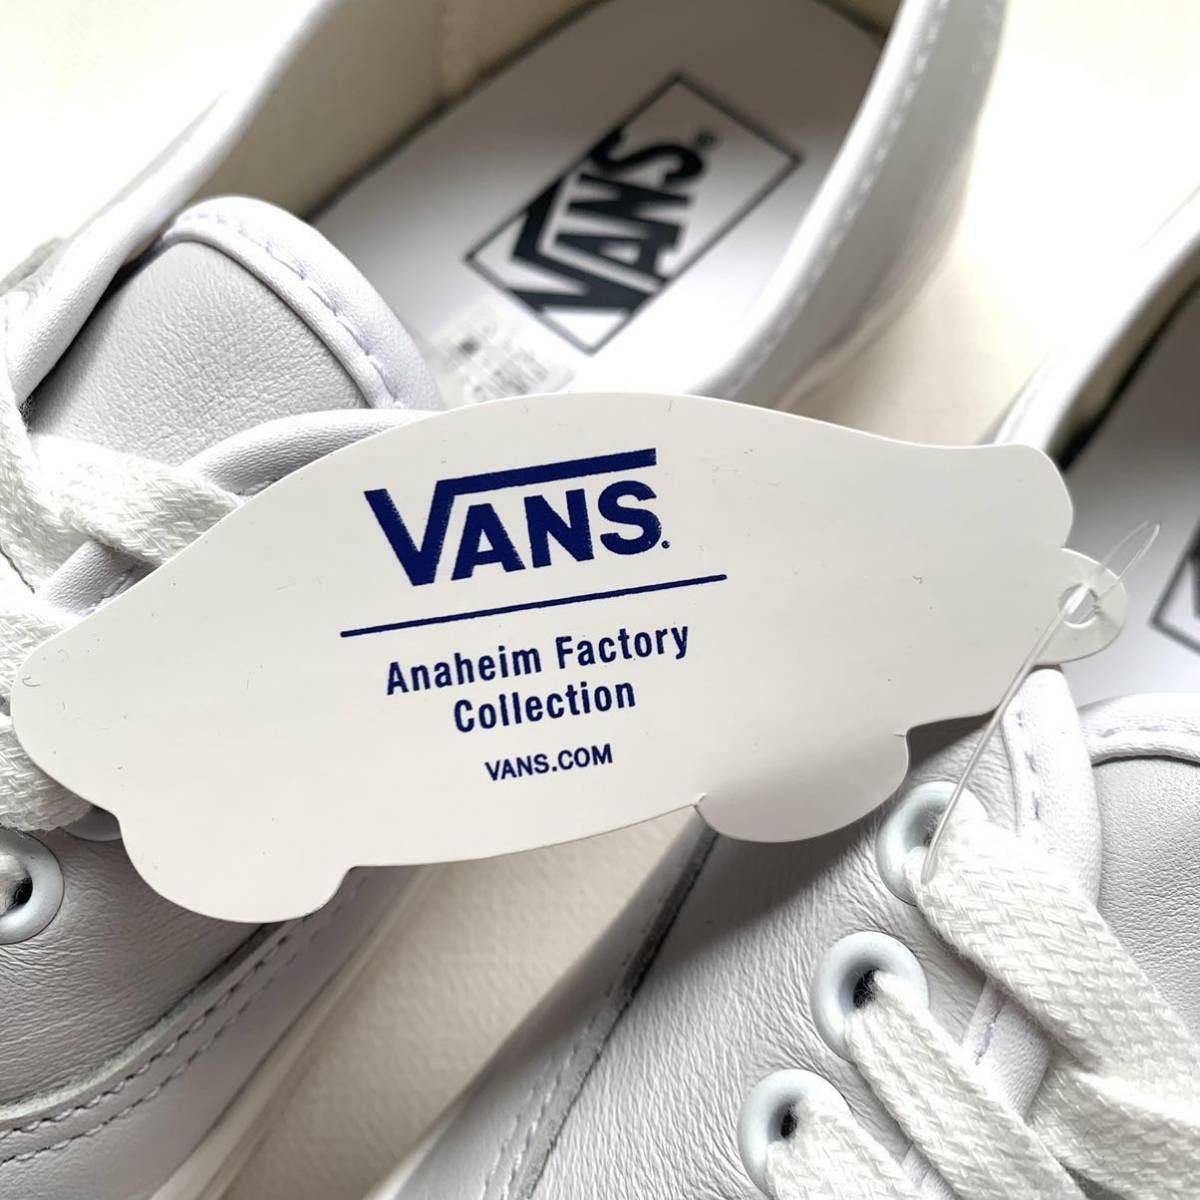 新品 VANS バンズ アナハイム ファクトリー オーセンティック 44 DX 白 ホワイト レザー スニーカー 27㎝ メンズ US企画 復刻 US9 送料無料_画像4